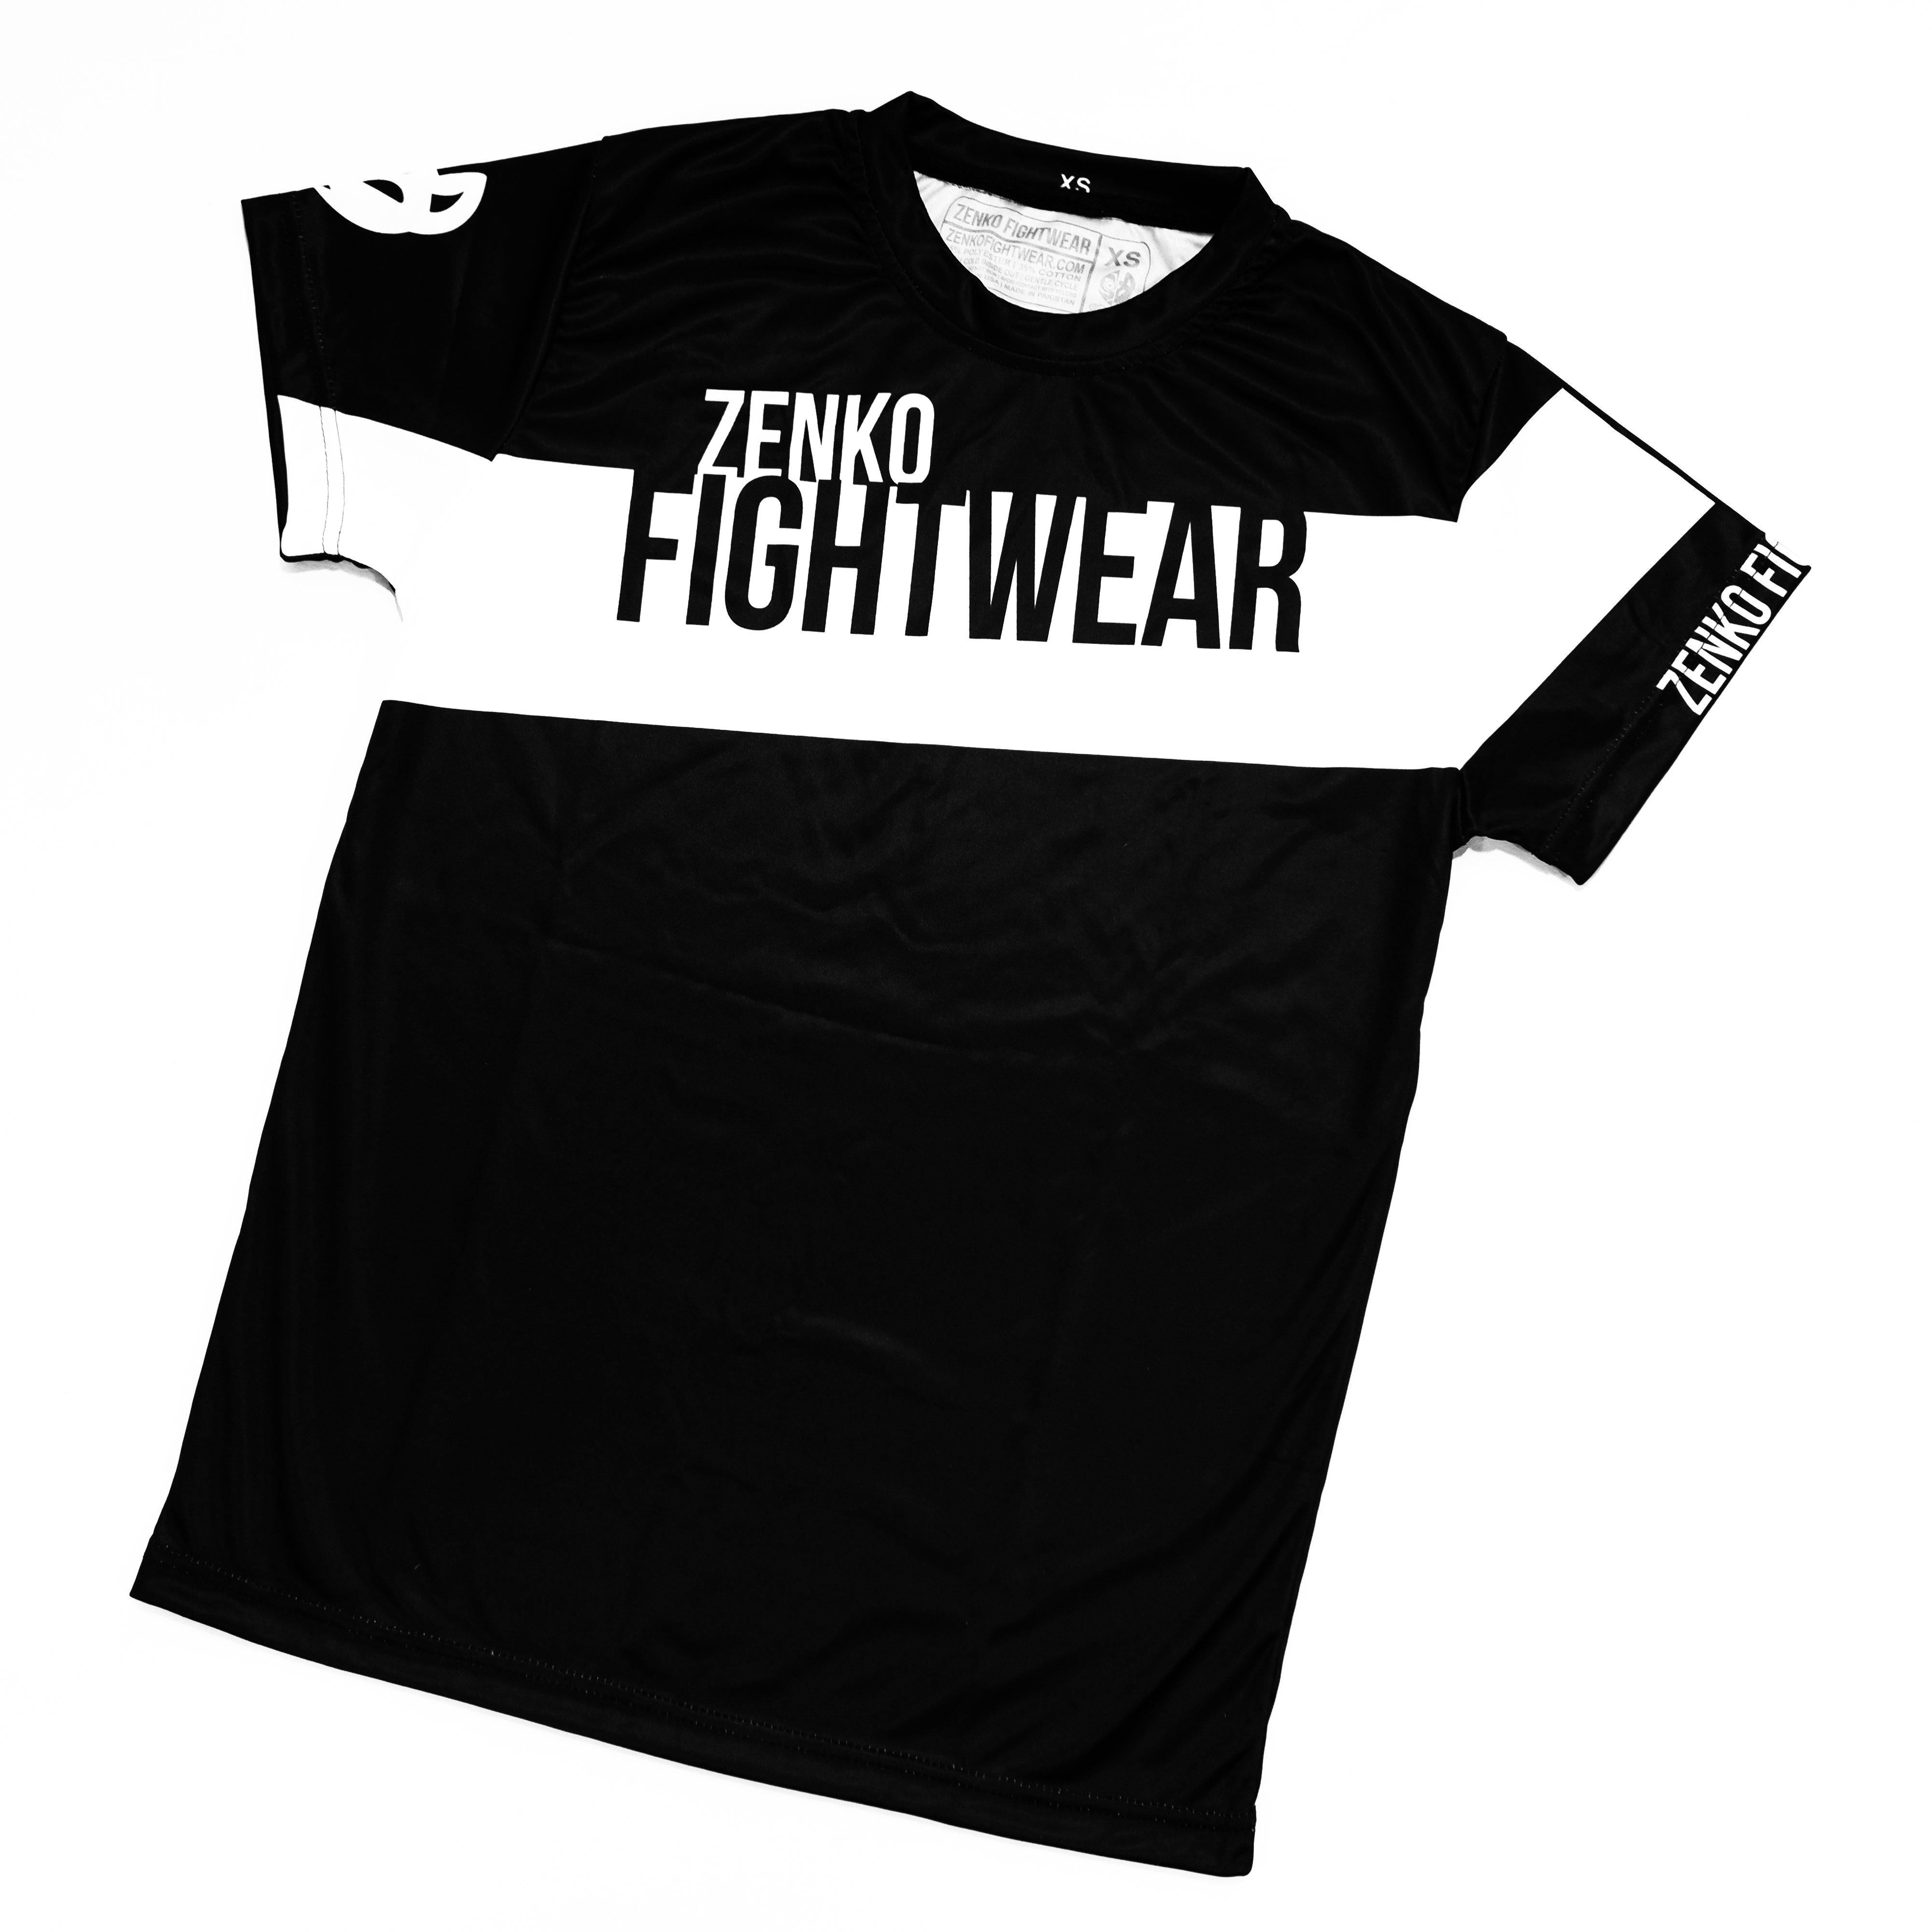 Zenko Fightwear Athlete Jersey Tee